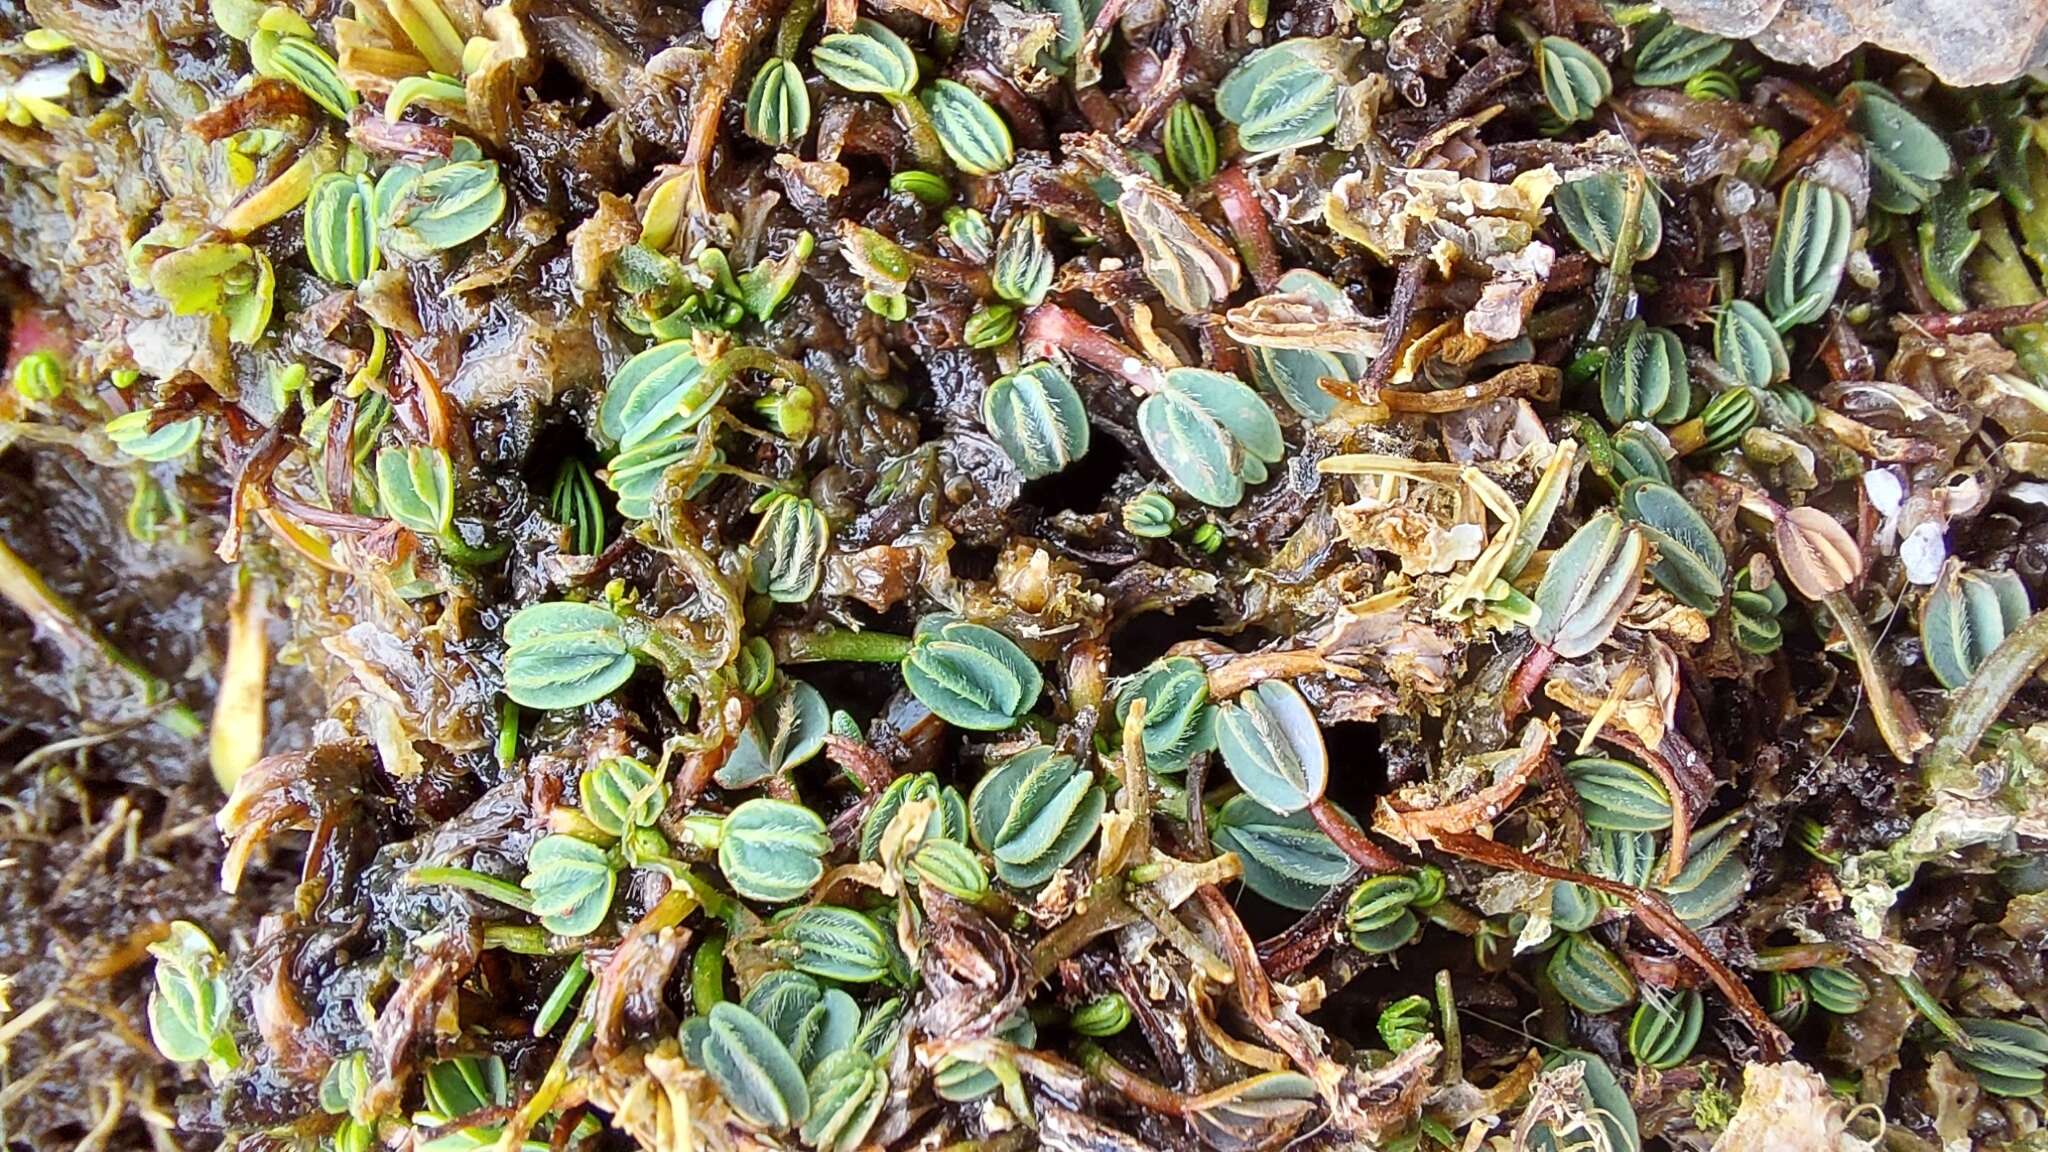 Image de Lachemilla diplophylla (Diels) Rothm.